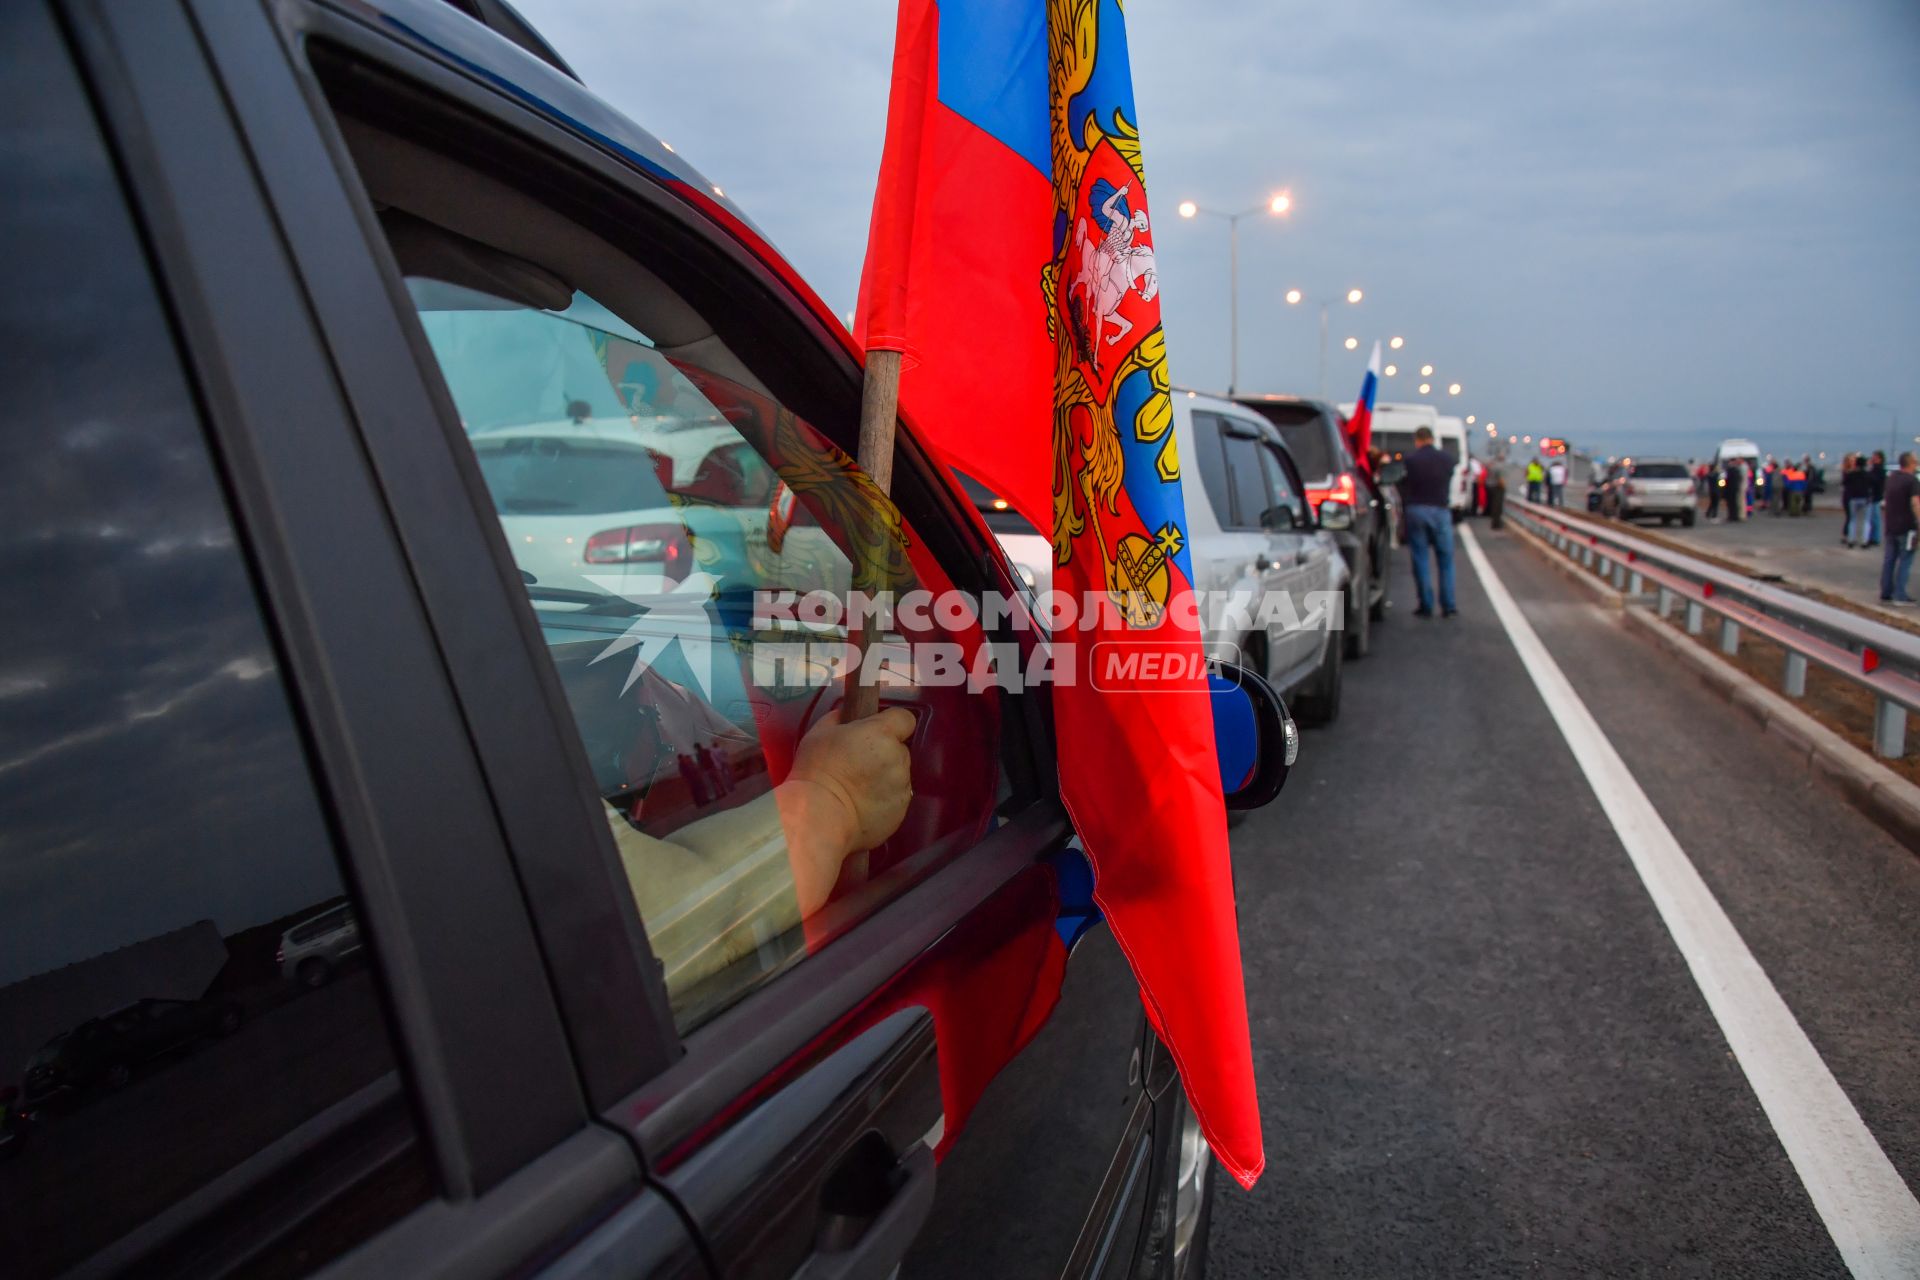 Тамань. Автомобилисты перед открытием движения по автодорожной части Крымского моста через Керченский пролив.